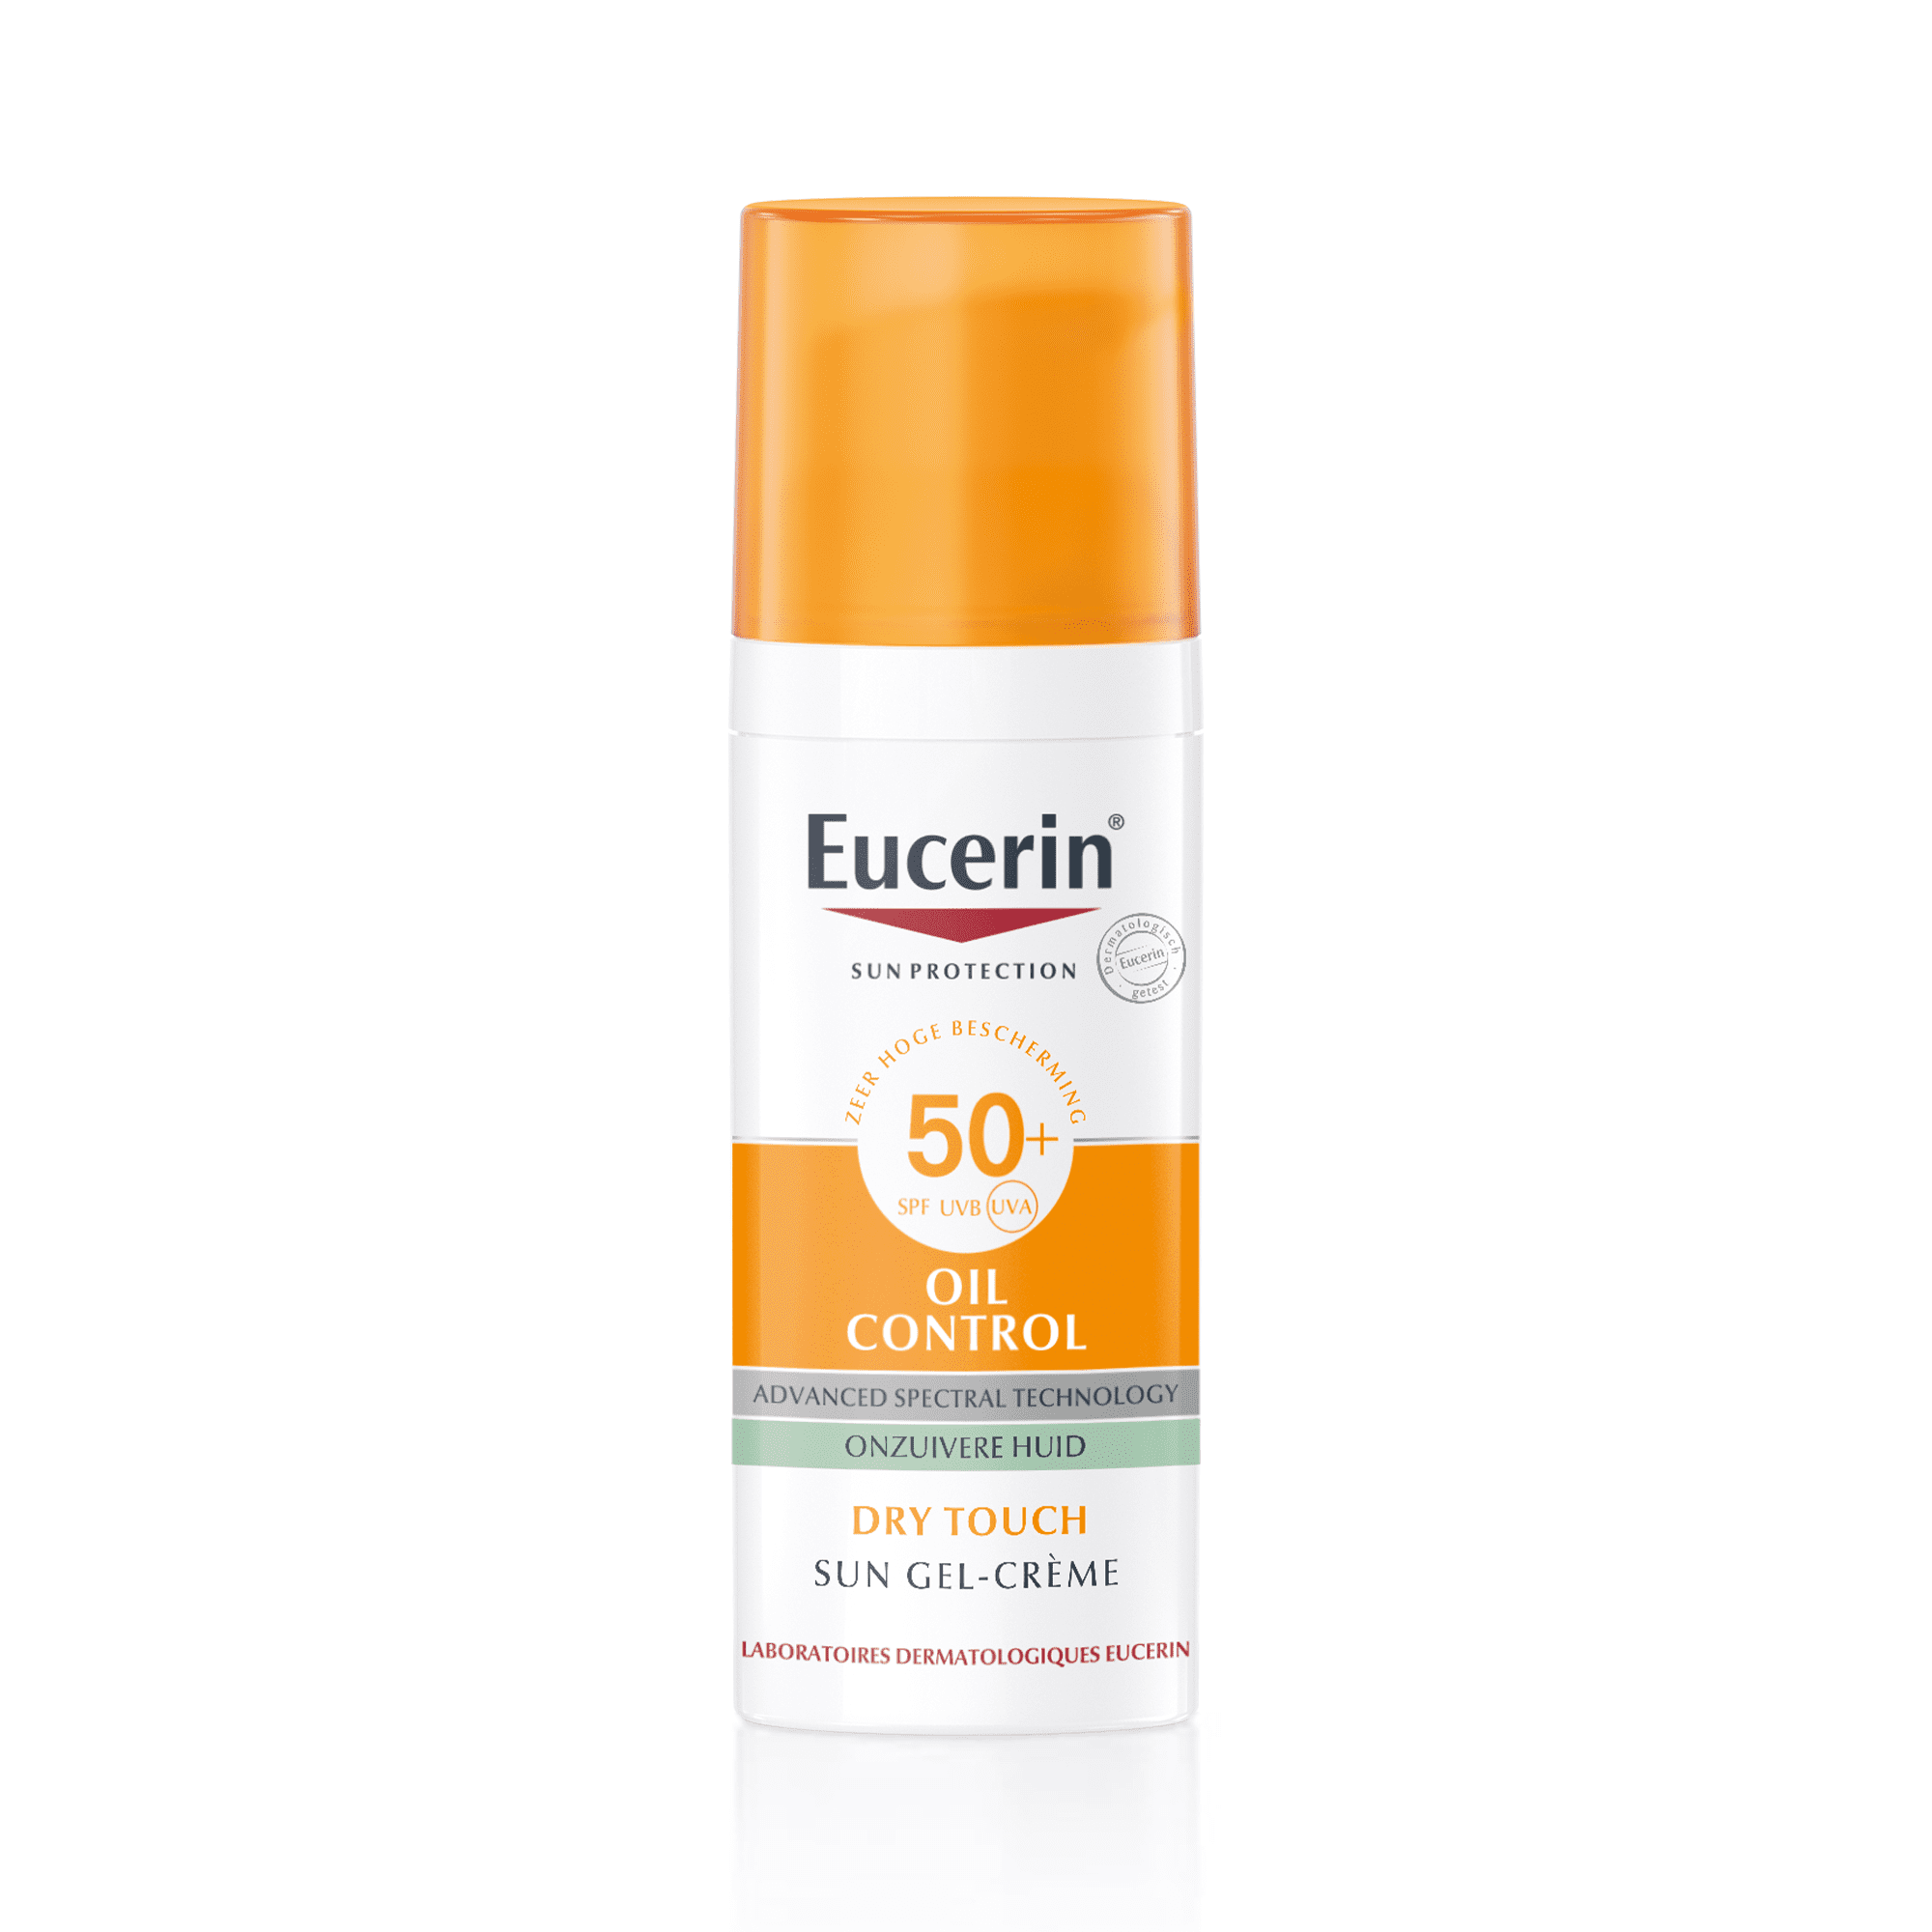 Eucerin Oil Control Sun Gel-Crème SPF 50+